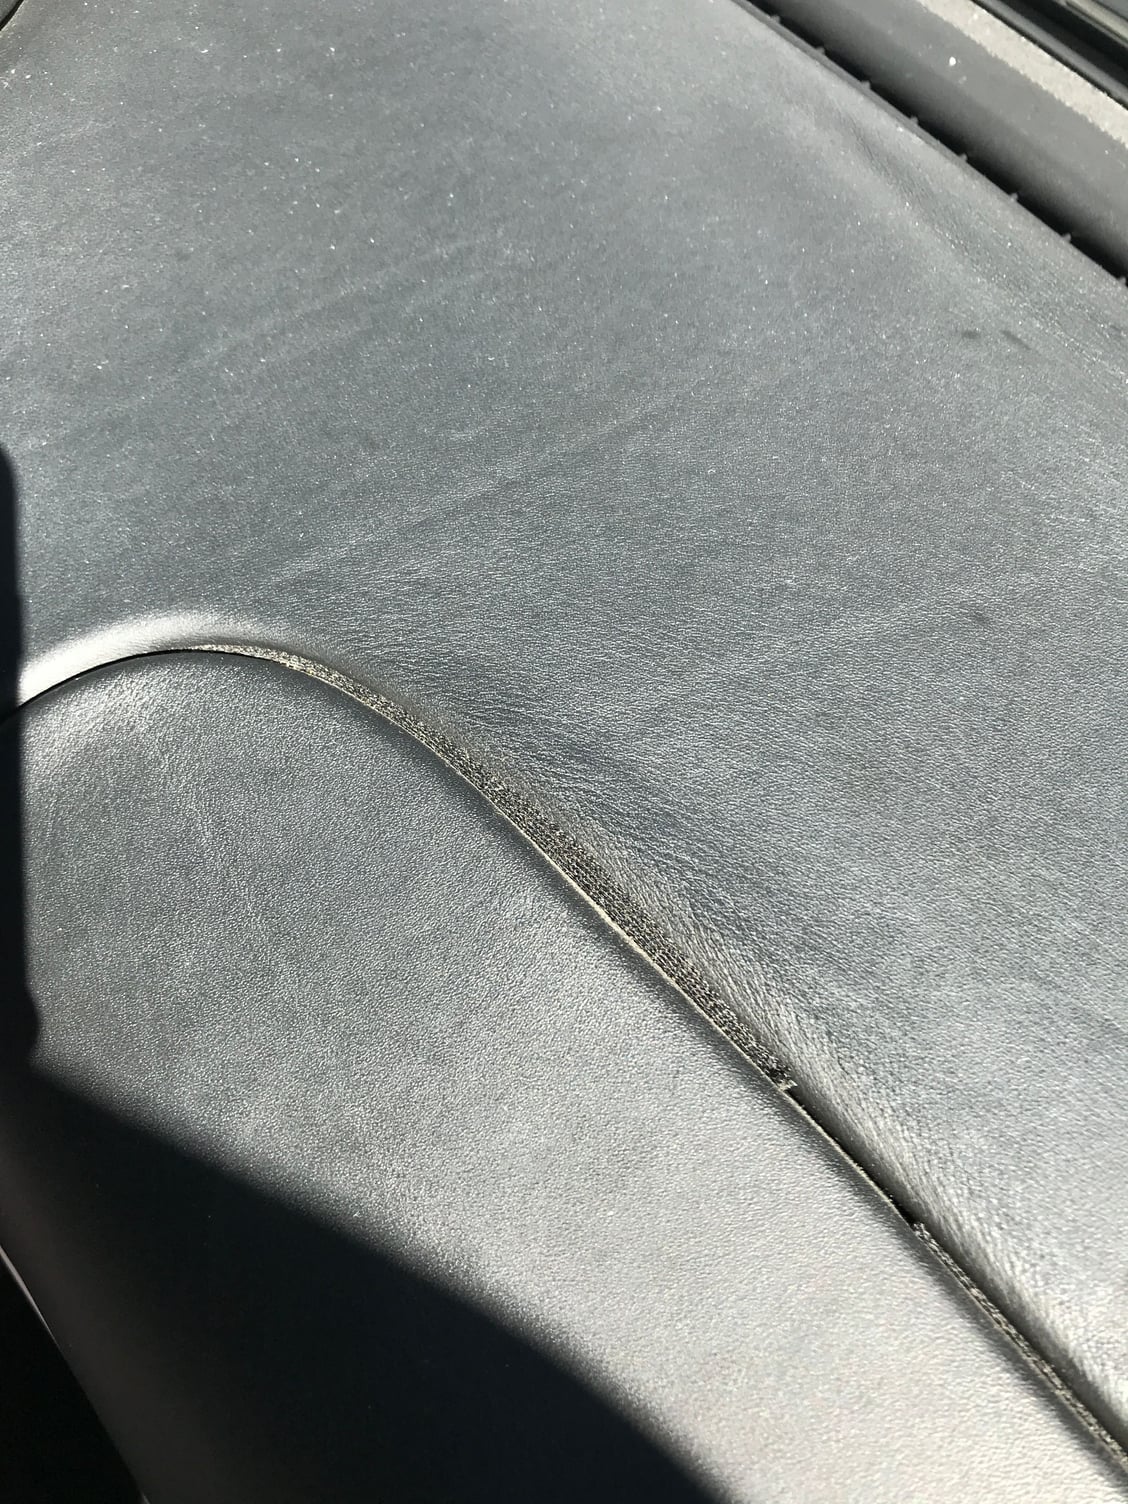 Dry / cracked leather dash repair - Rennlist - Porsche Discussion Forums